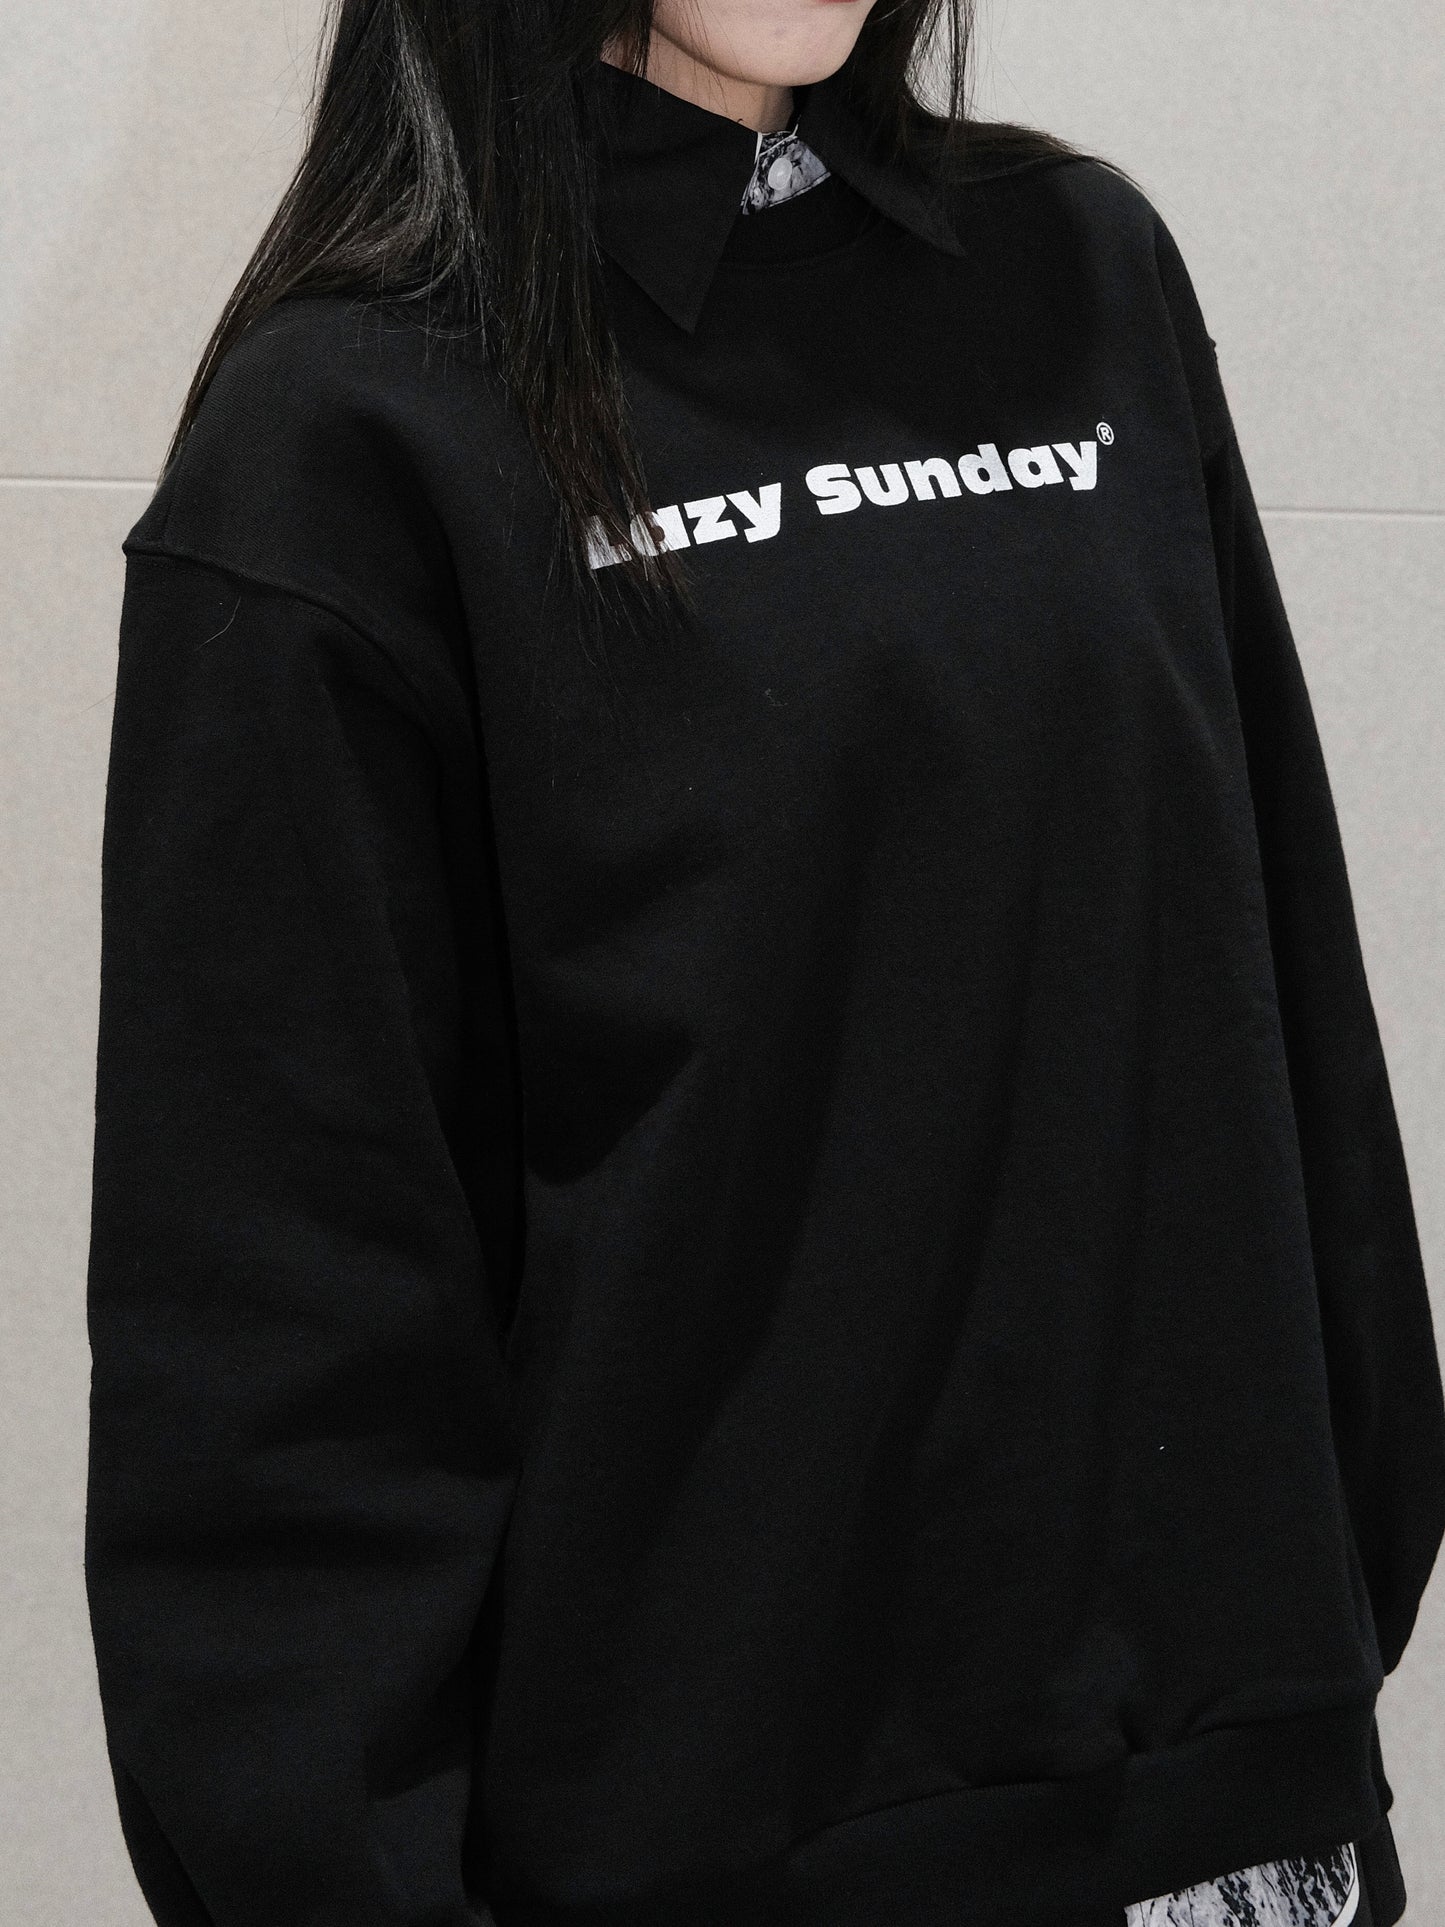 "Lazy Sunday" Sweatshirt